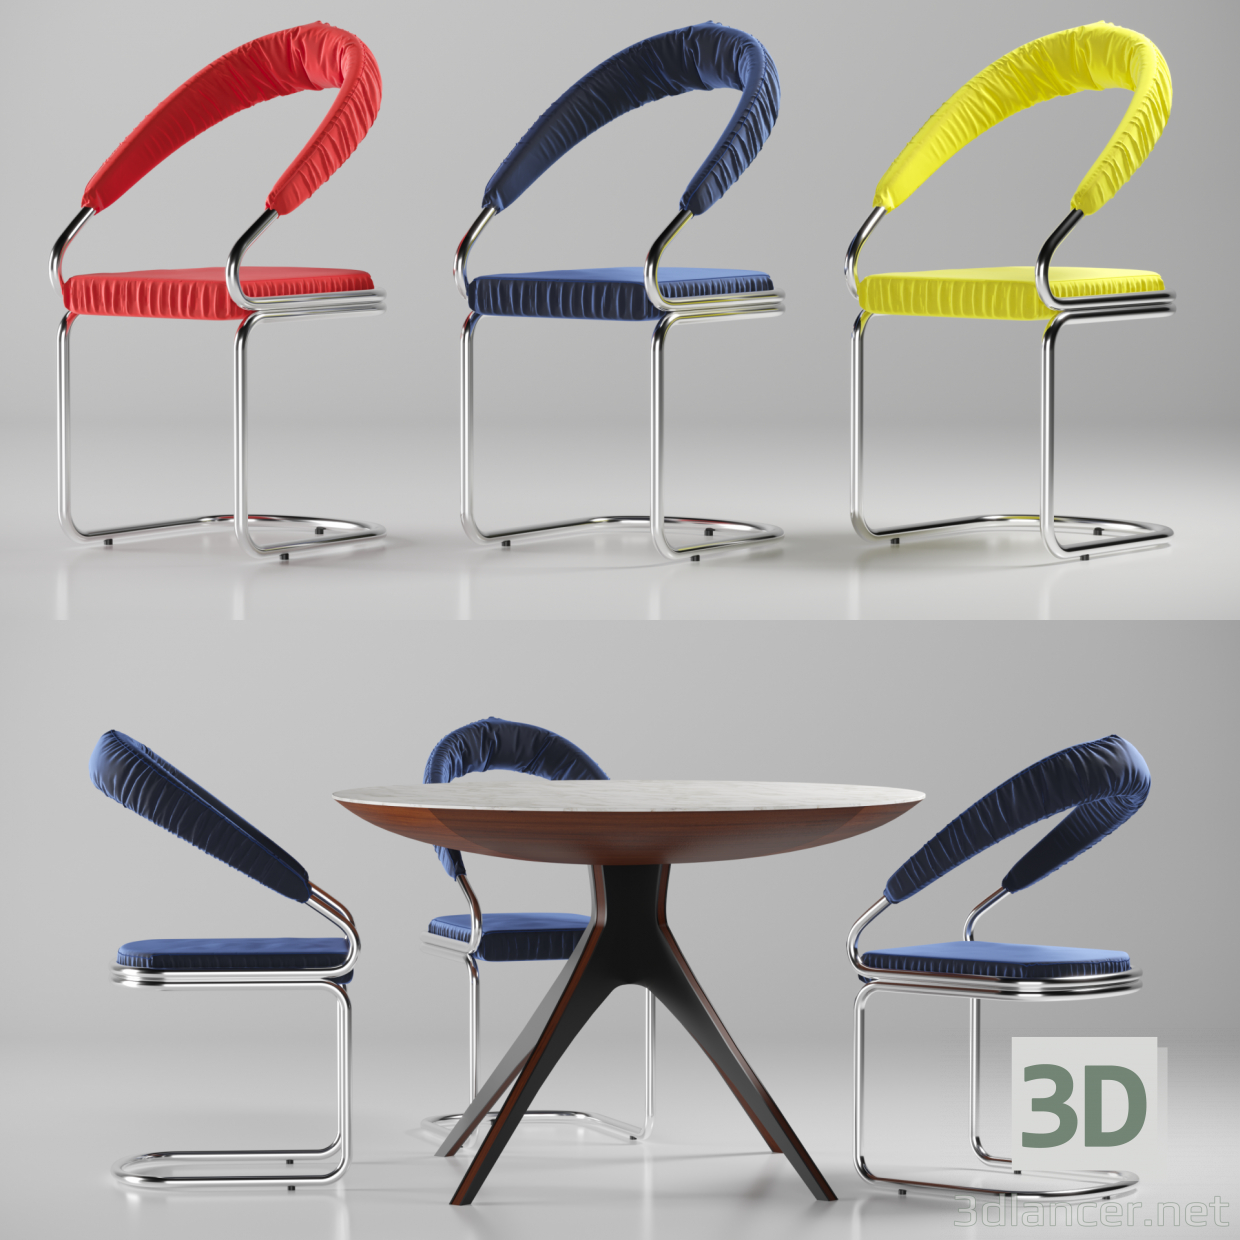 3 डी टेबल और असबाब के साथ कुर्सी मॉडल खरीद - रेंडर